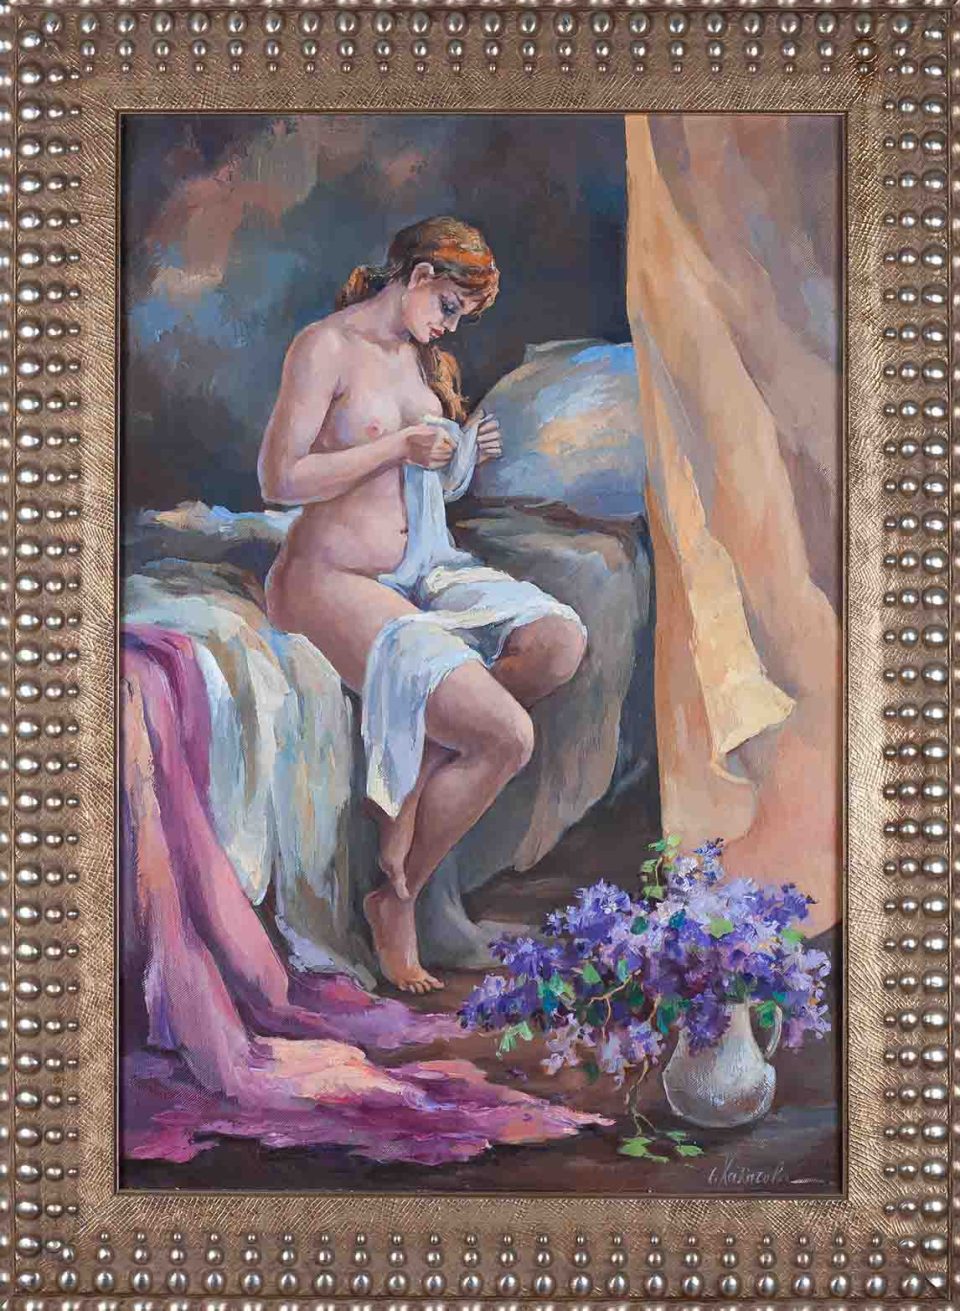 chalatova eleni, original oil painting, nude woman,xalatova eleni elaiografia , gymno, pinakas zografikis, with frame, me korniza